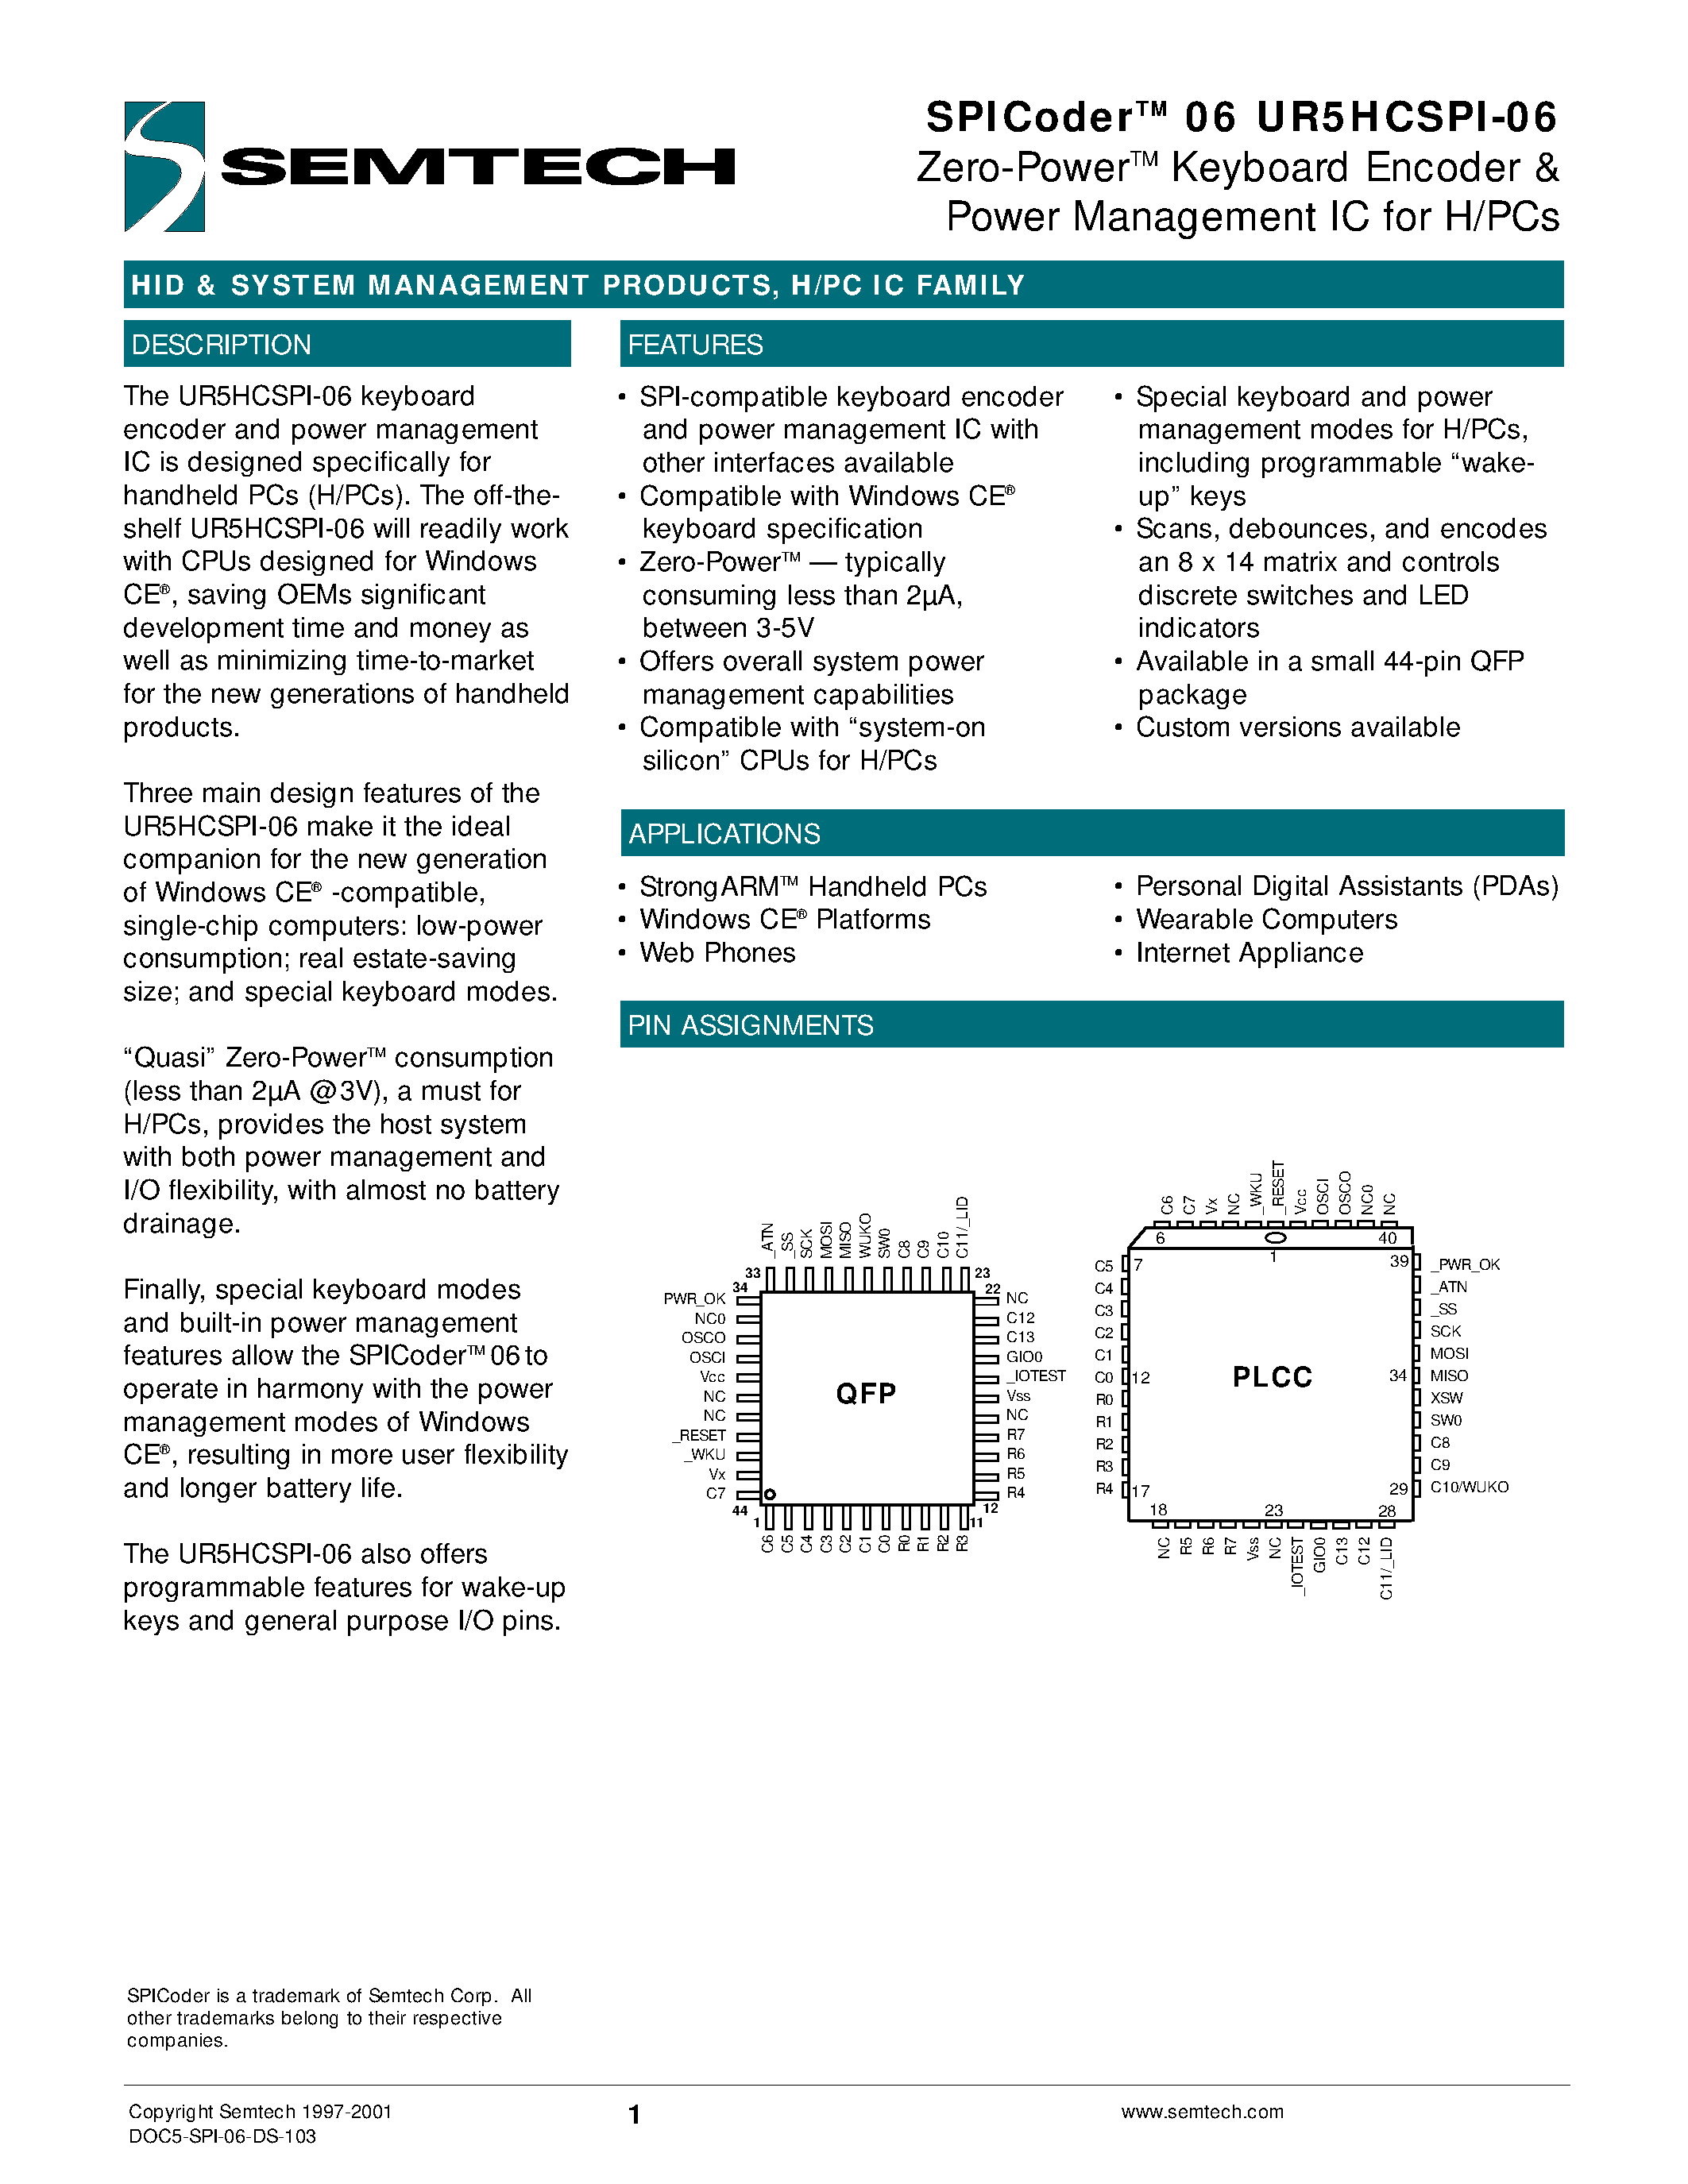 Datasheet UR5HCSPI-06 - Zero-PowerTM Keyboard Encoder & Power Management IC for H/PCs page 1